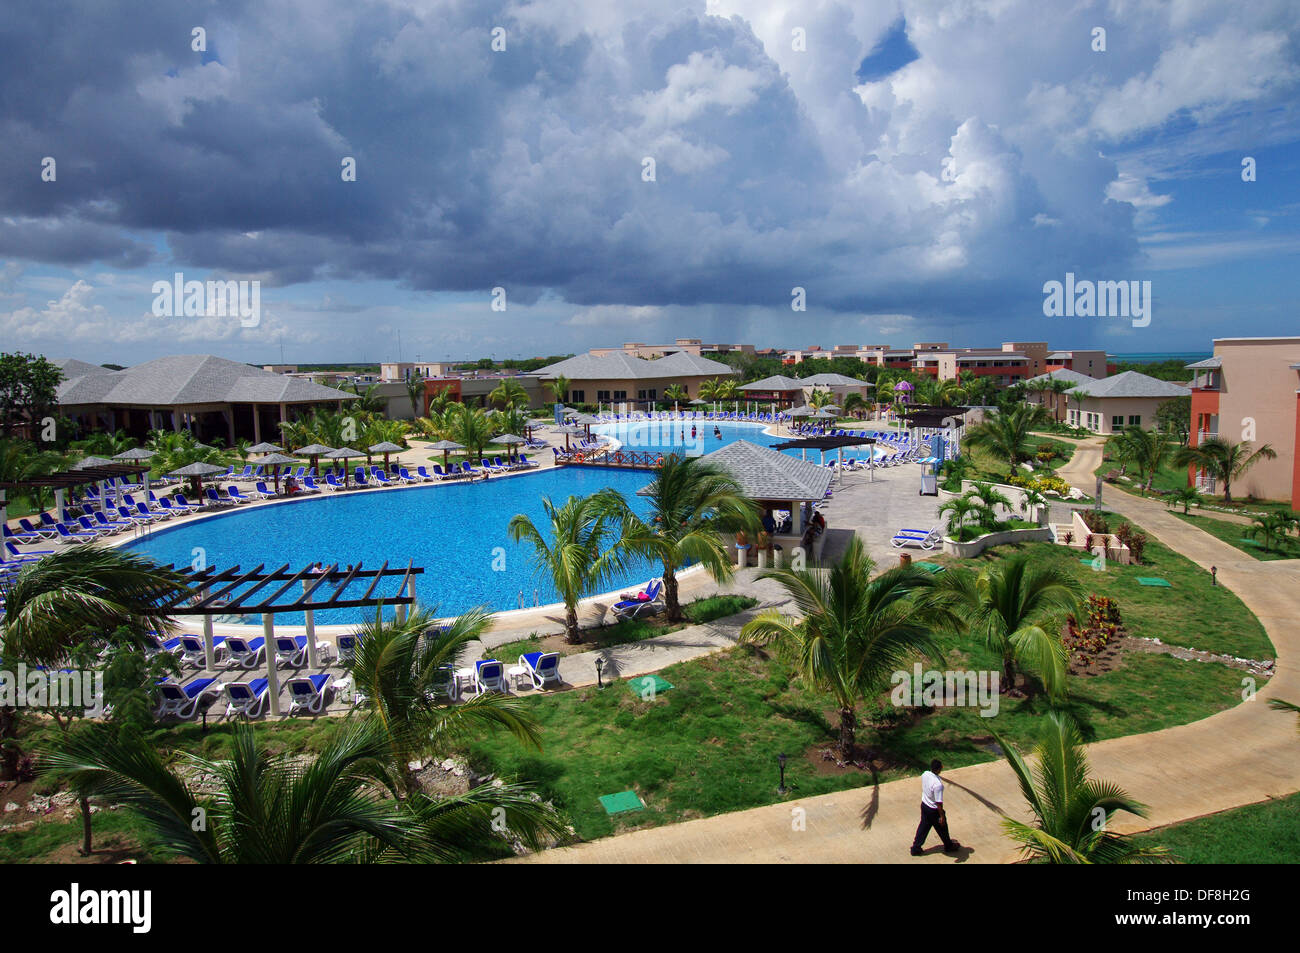 All Inclusive hotel complex in Cayo Coco, Cuba Stock Photo